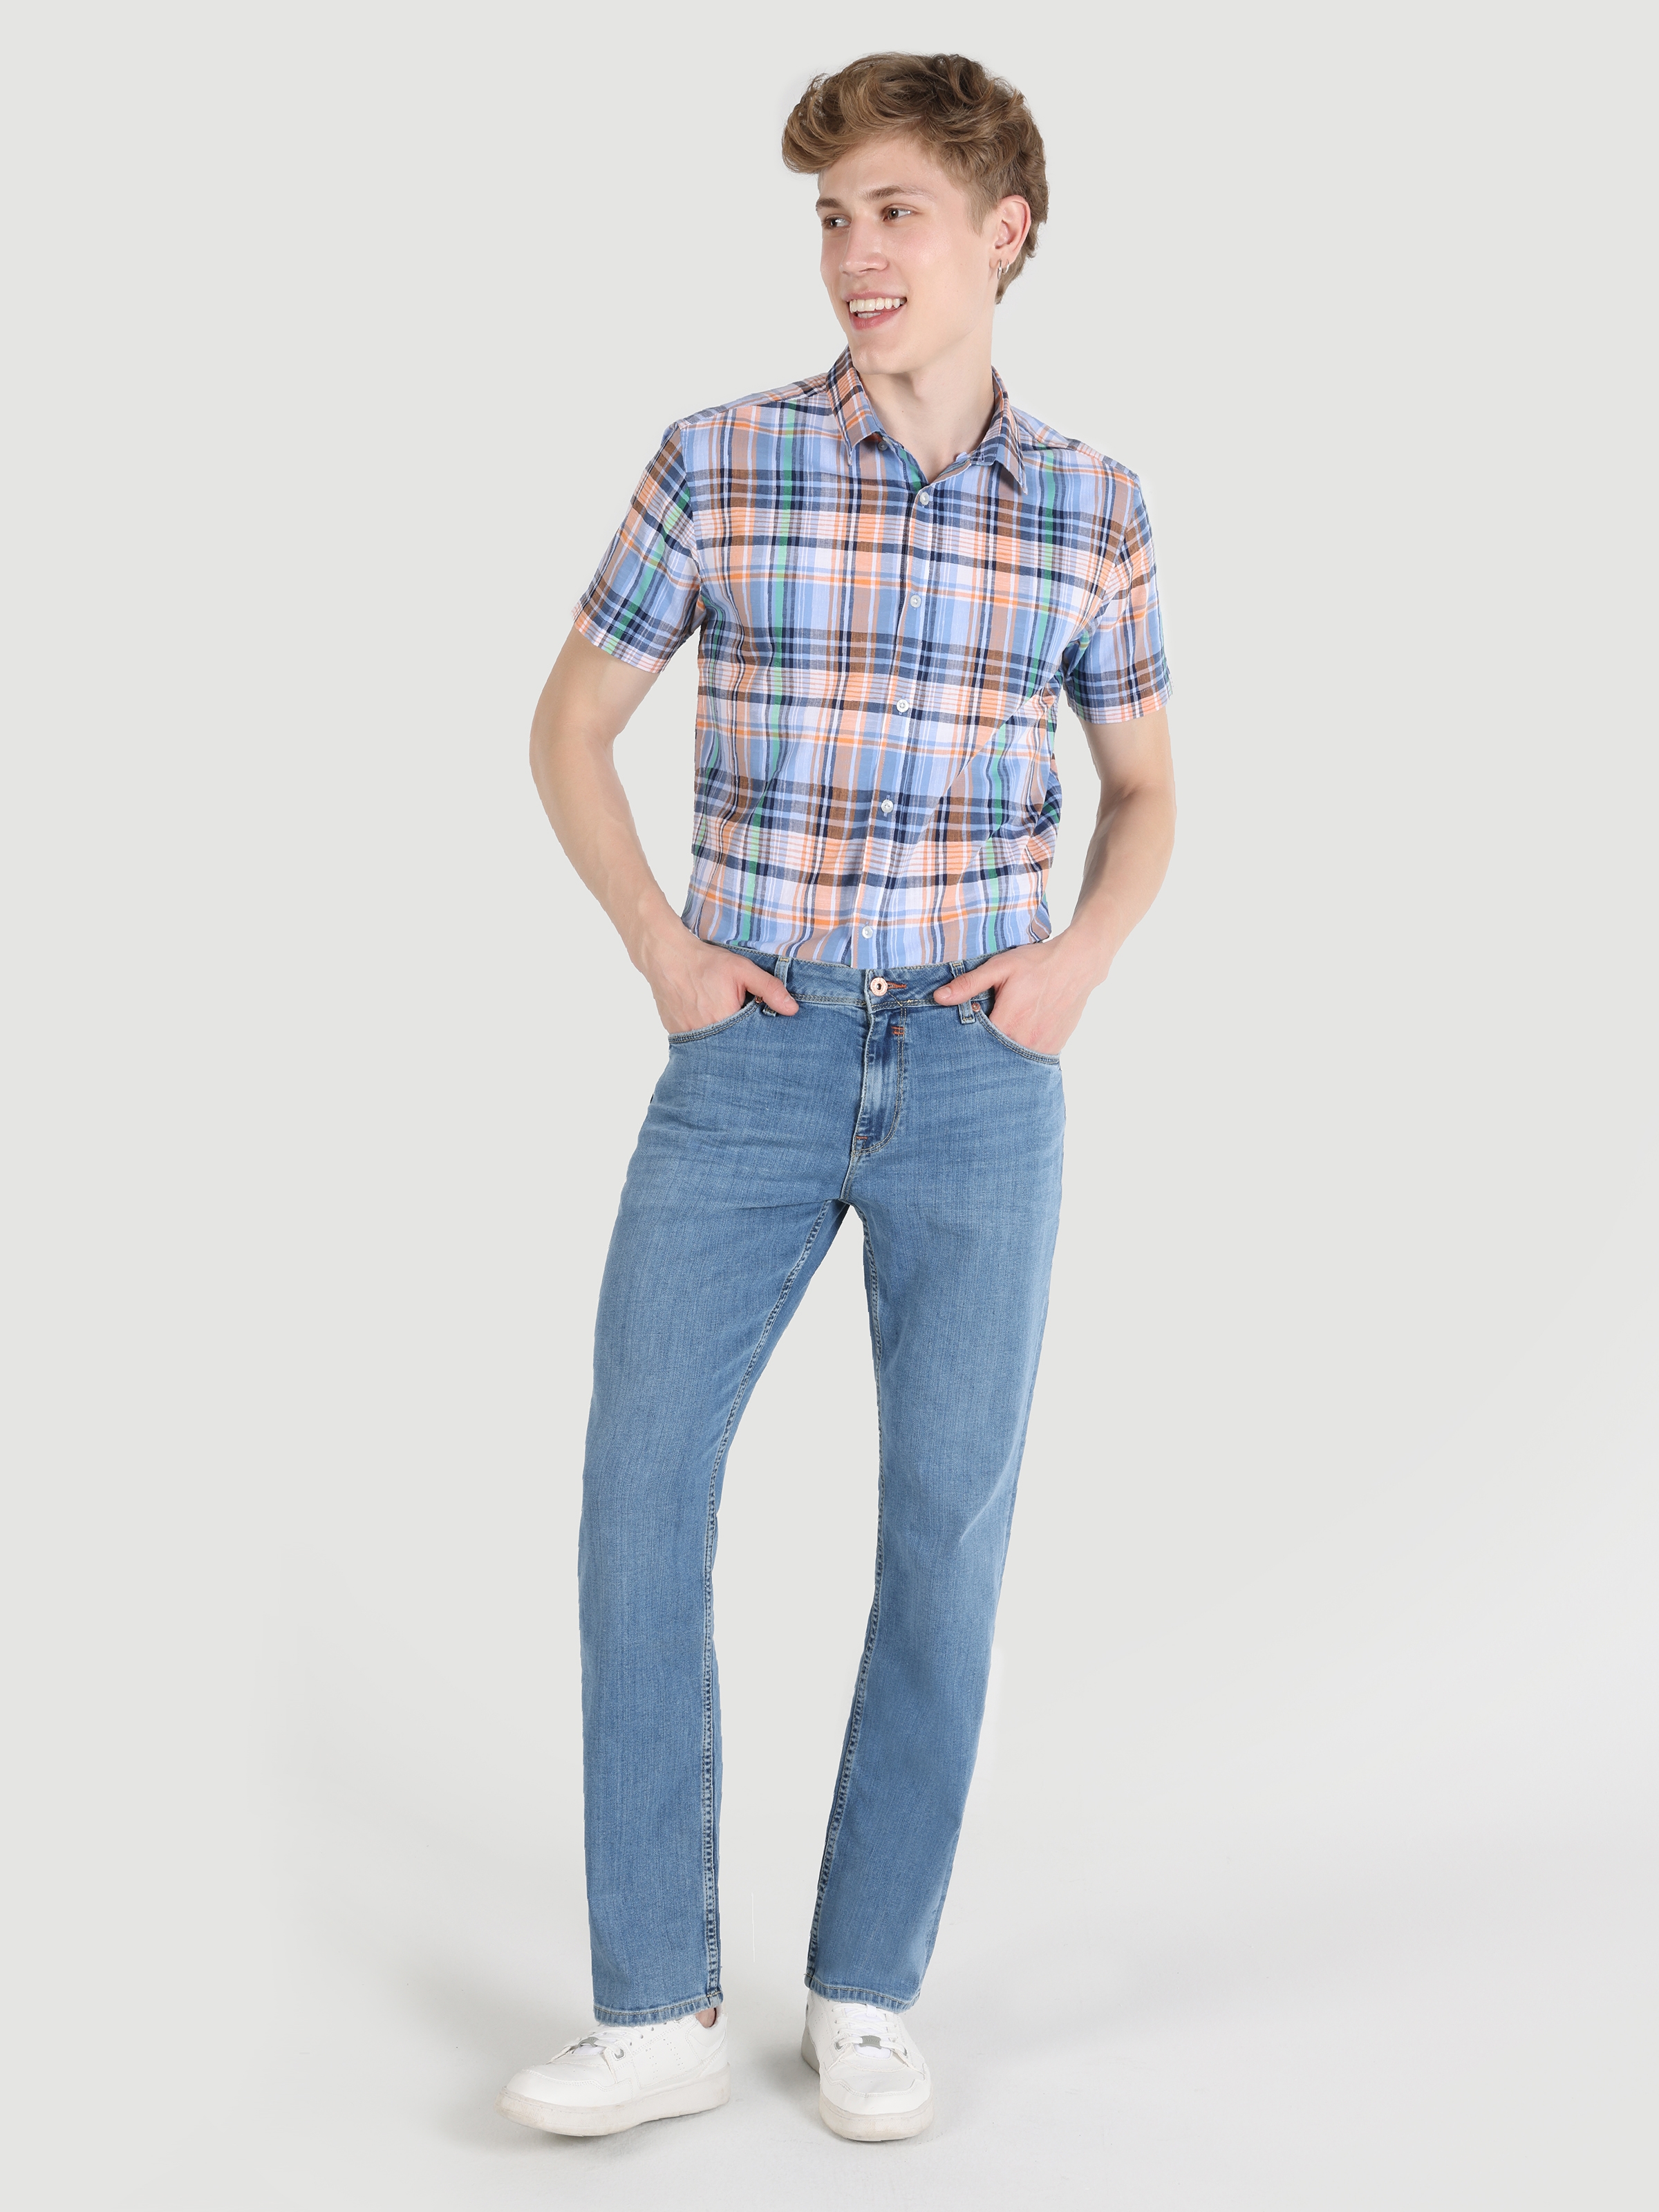 Afficher les détails de 045 David Coupe Régulière Taille Normale Jambe Droite Bleu Pantalon En Jean Pour Hommes